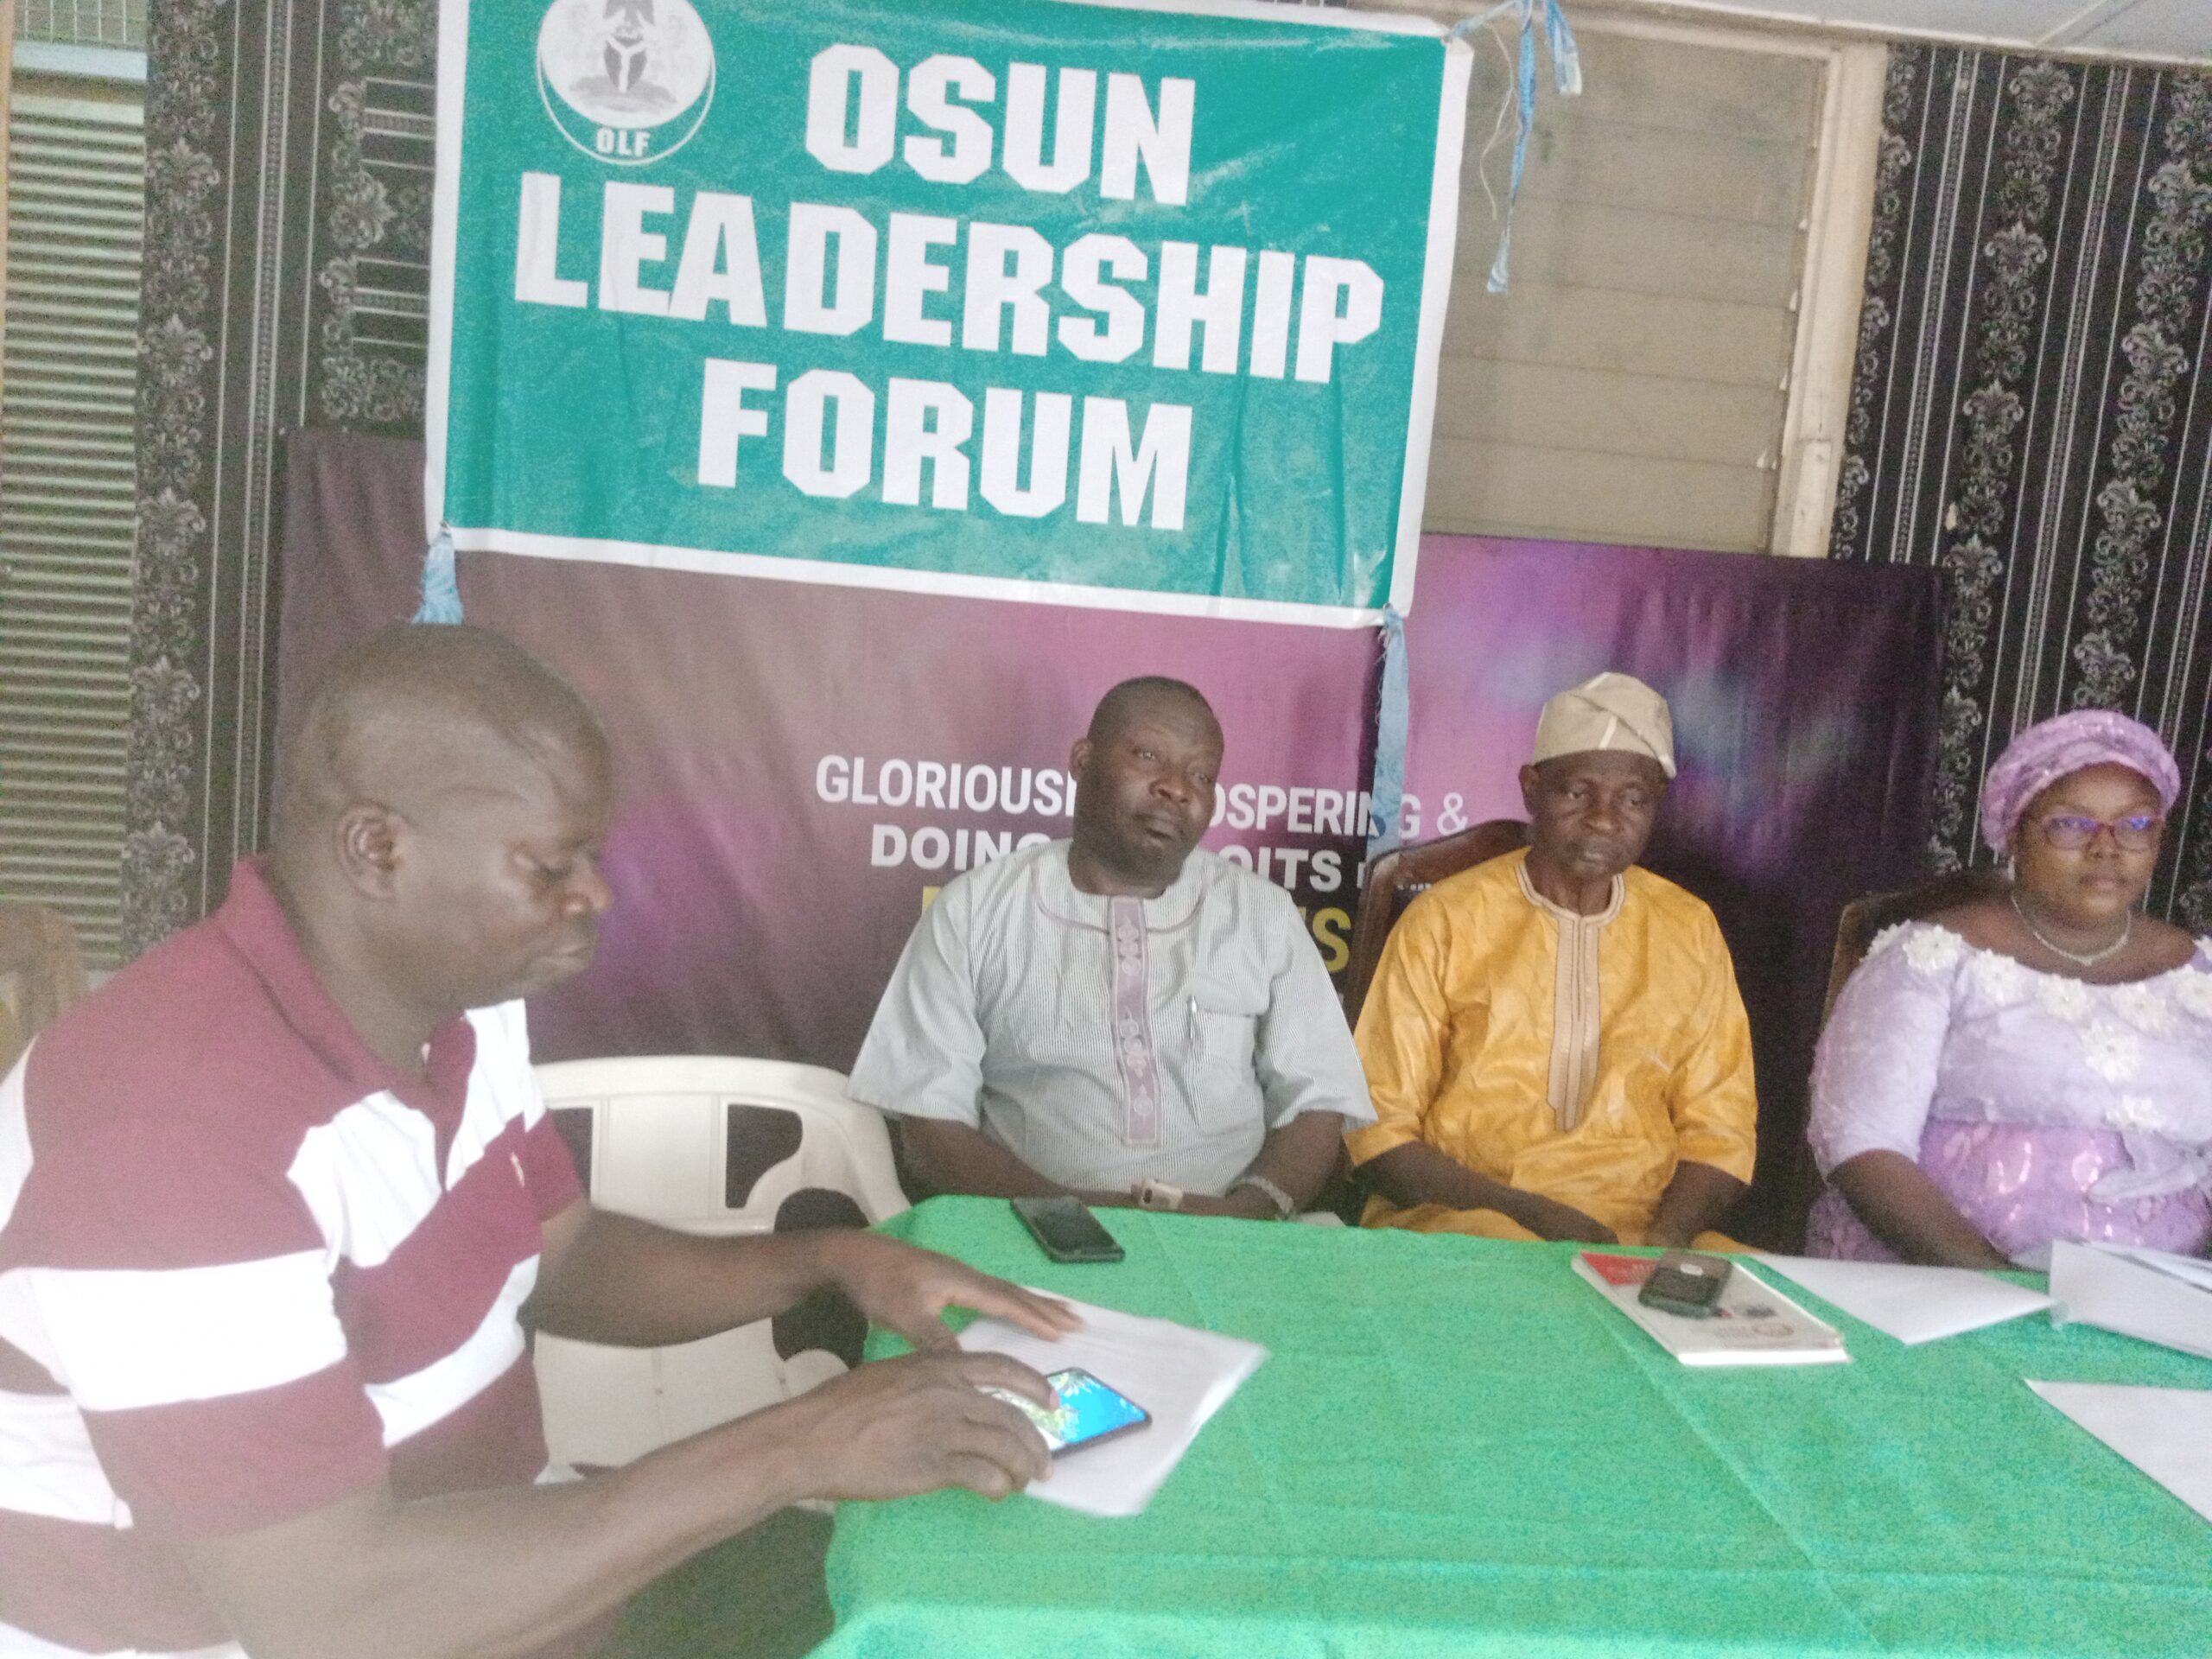 Osun Leadership Forum